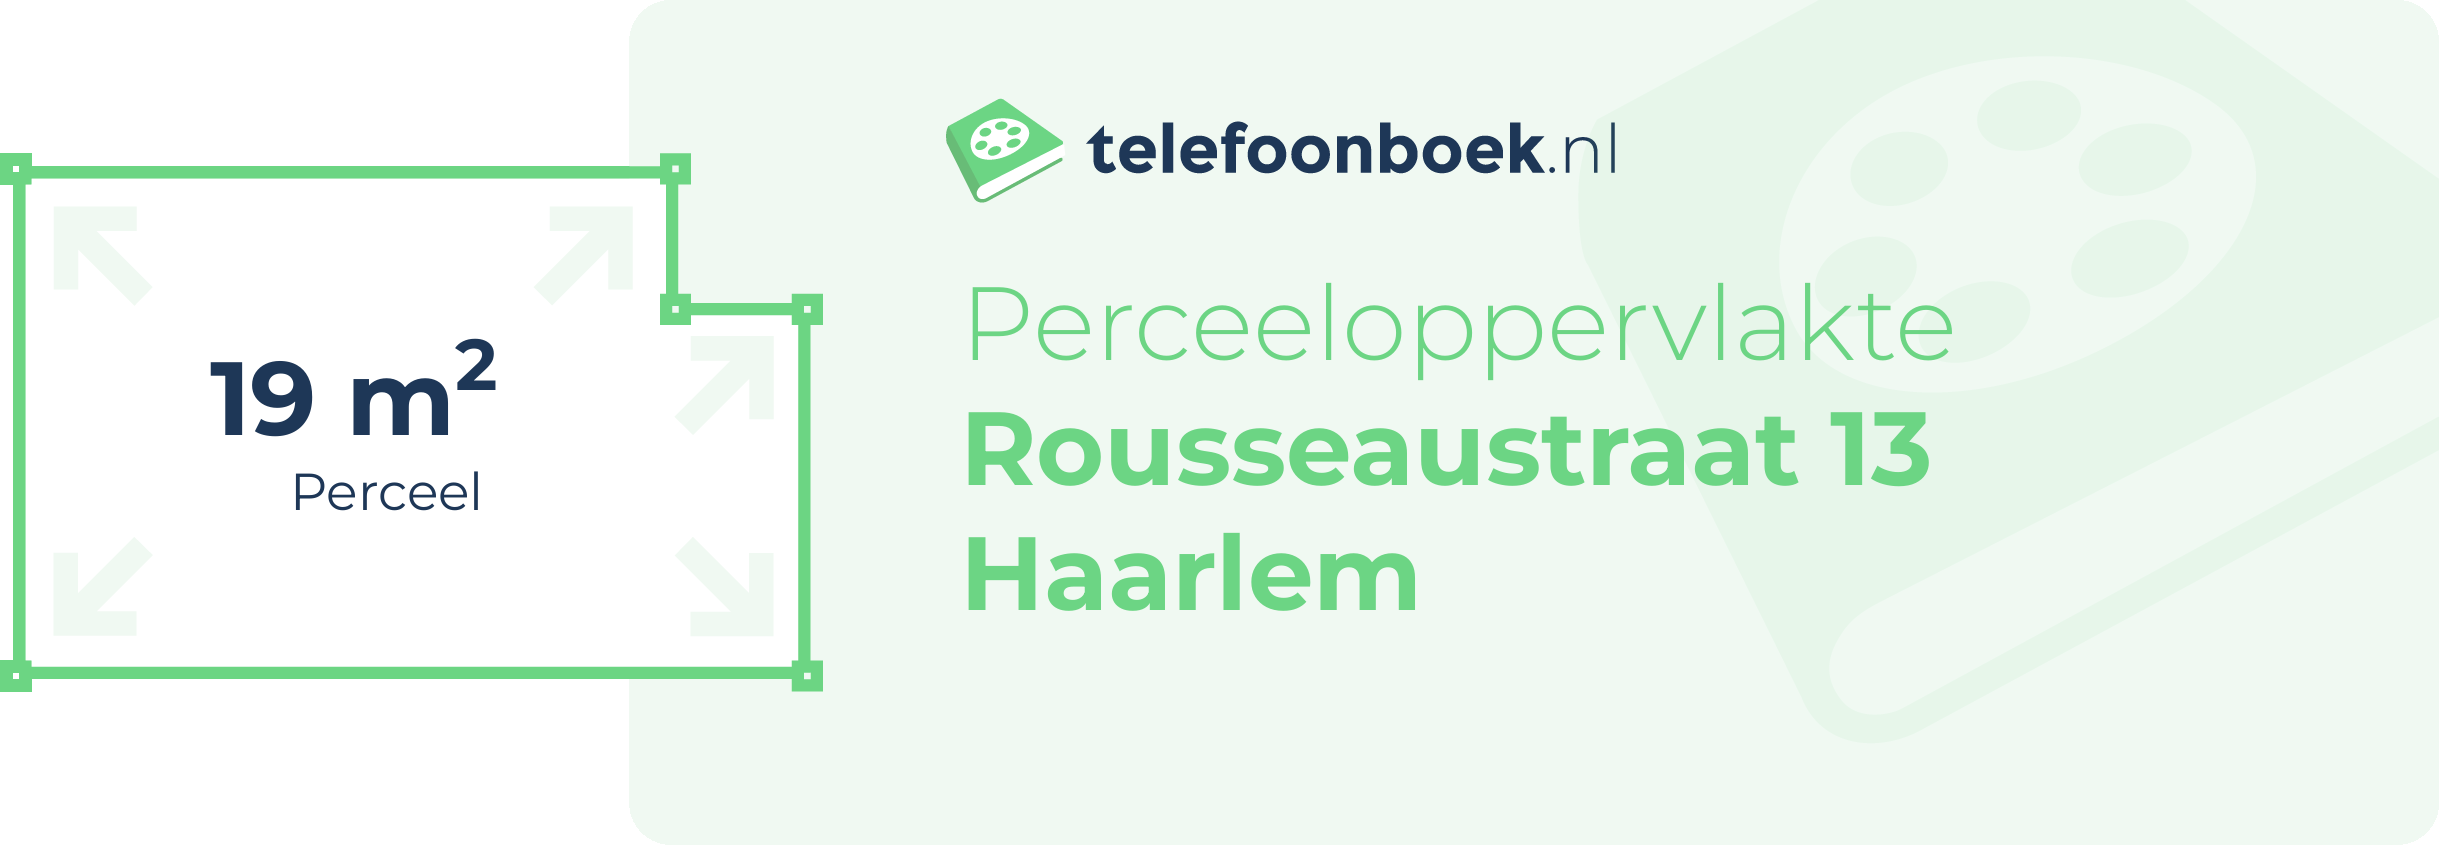 Perceeloppervlakte Rousseaustraat 13 Haarlem